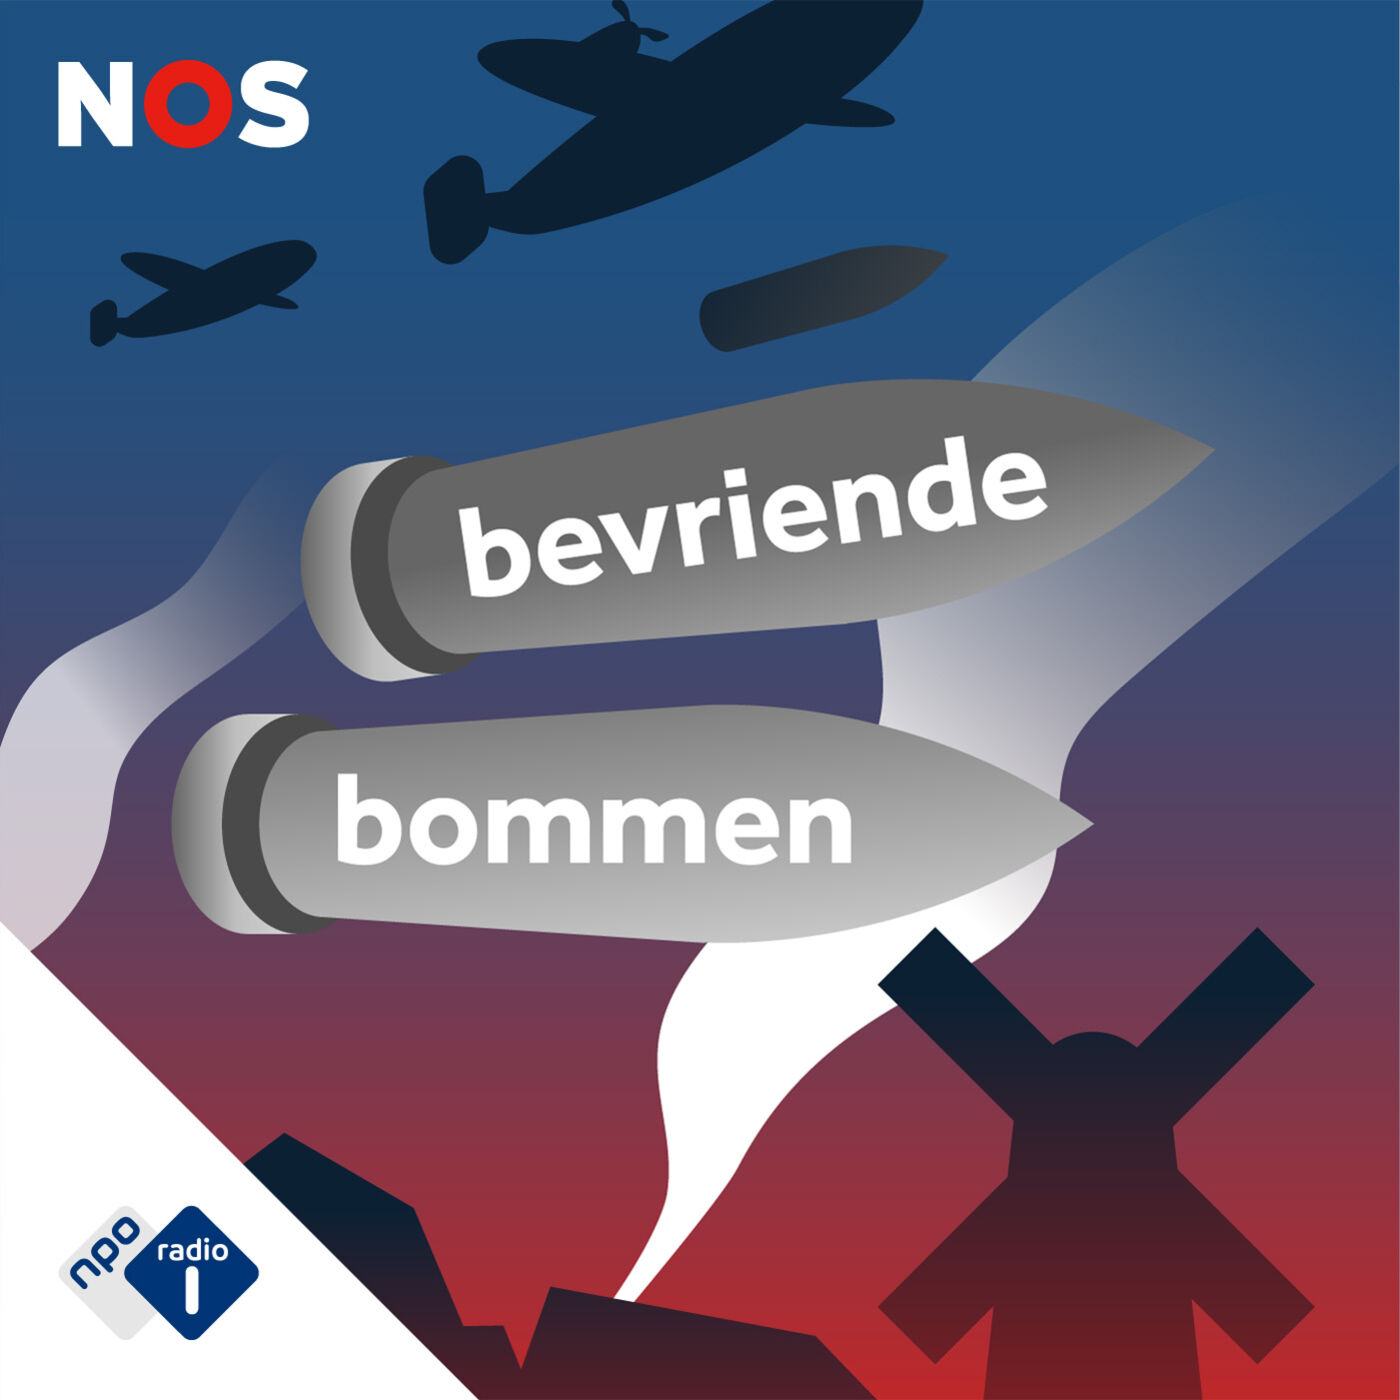 Bevriende Bommen podcast show image